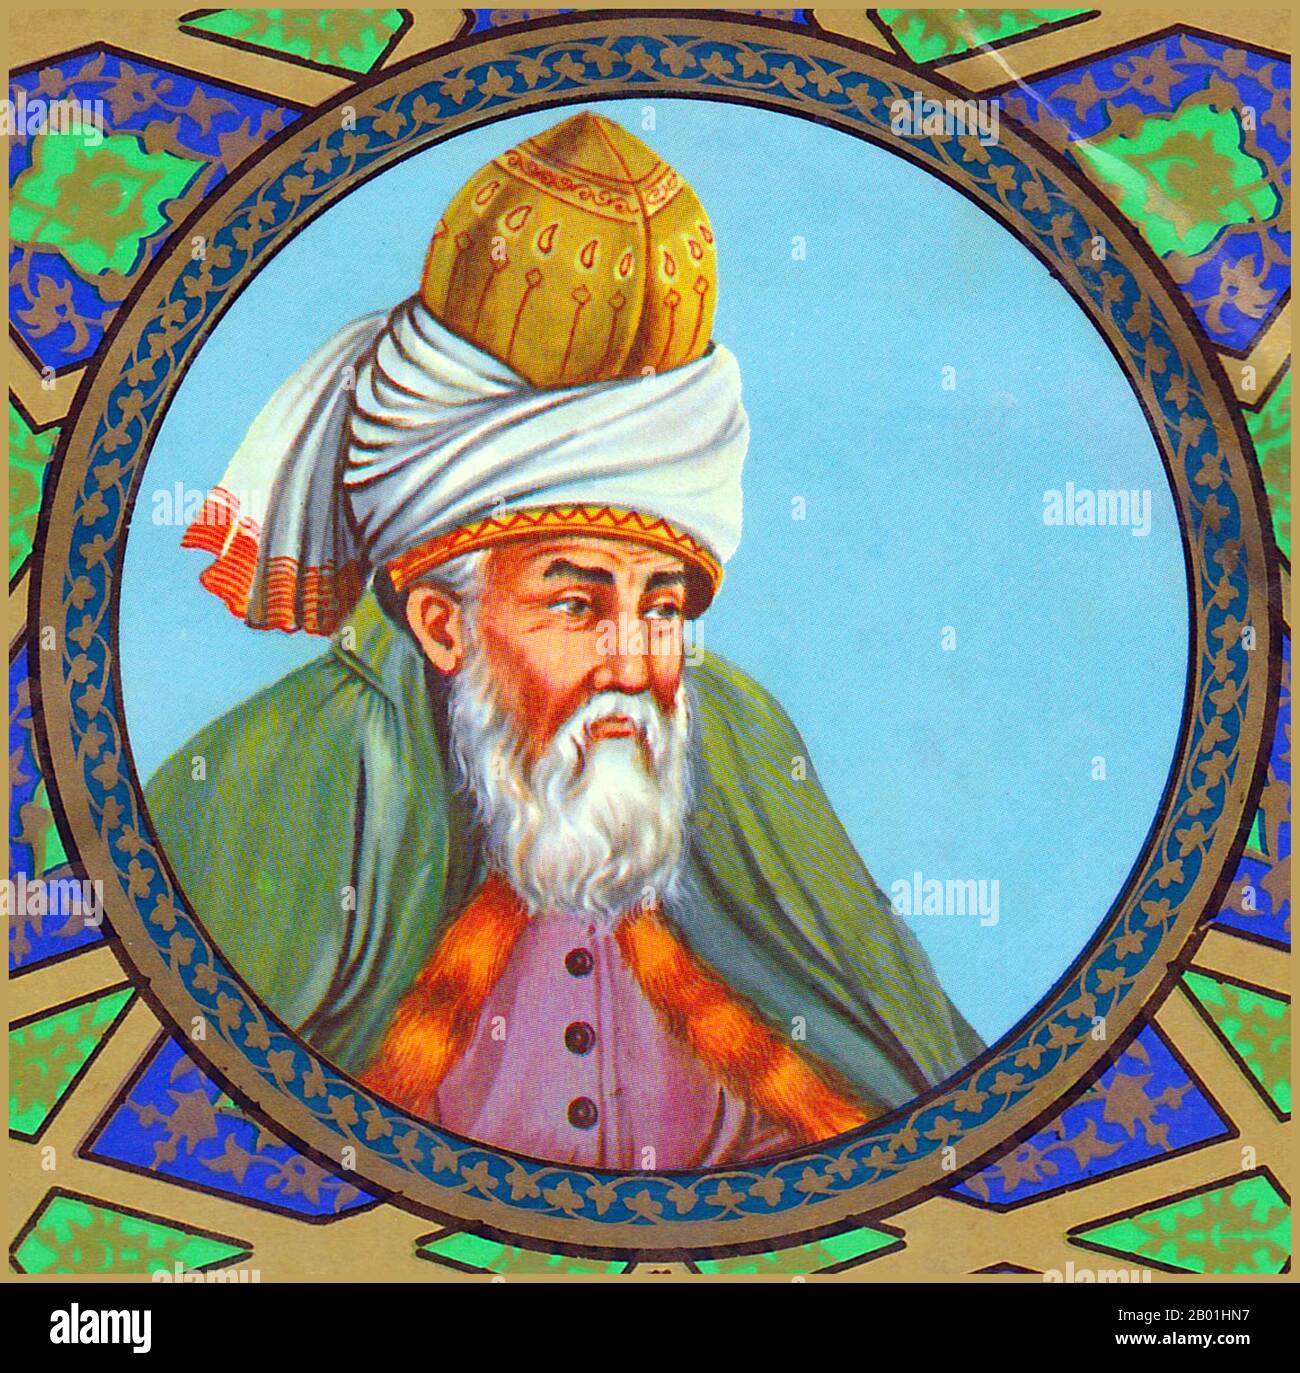 Afghanistan/Iran : le poète soufi persan Rumi (30 septembre 1207 - 17 décembre 1273), c. 17e siècle. Jalāl ad-Dīn Muḥammad Balkhī, également connu sous le nom de Jalāl ad-Dīn Muḥammad Rūmī et populairement connu sous le nom de Mevlānā en Turquie et Mawlānā en Iran et en Afghanistan mais connu dans le monde anglophone simplement sous le nom de Rumi, était un poète, juriste, théologien et mystique soufi musulman persan du 13e siècle. Il est né dans la province de Balkh en Afghanistan, dans une petite ville située au bord de la rivière Wakhsh dans ce qui est aujourd'hui le Tadjikistan. Banque D'Images